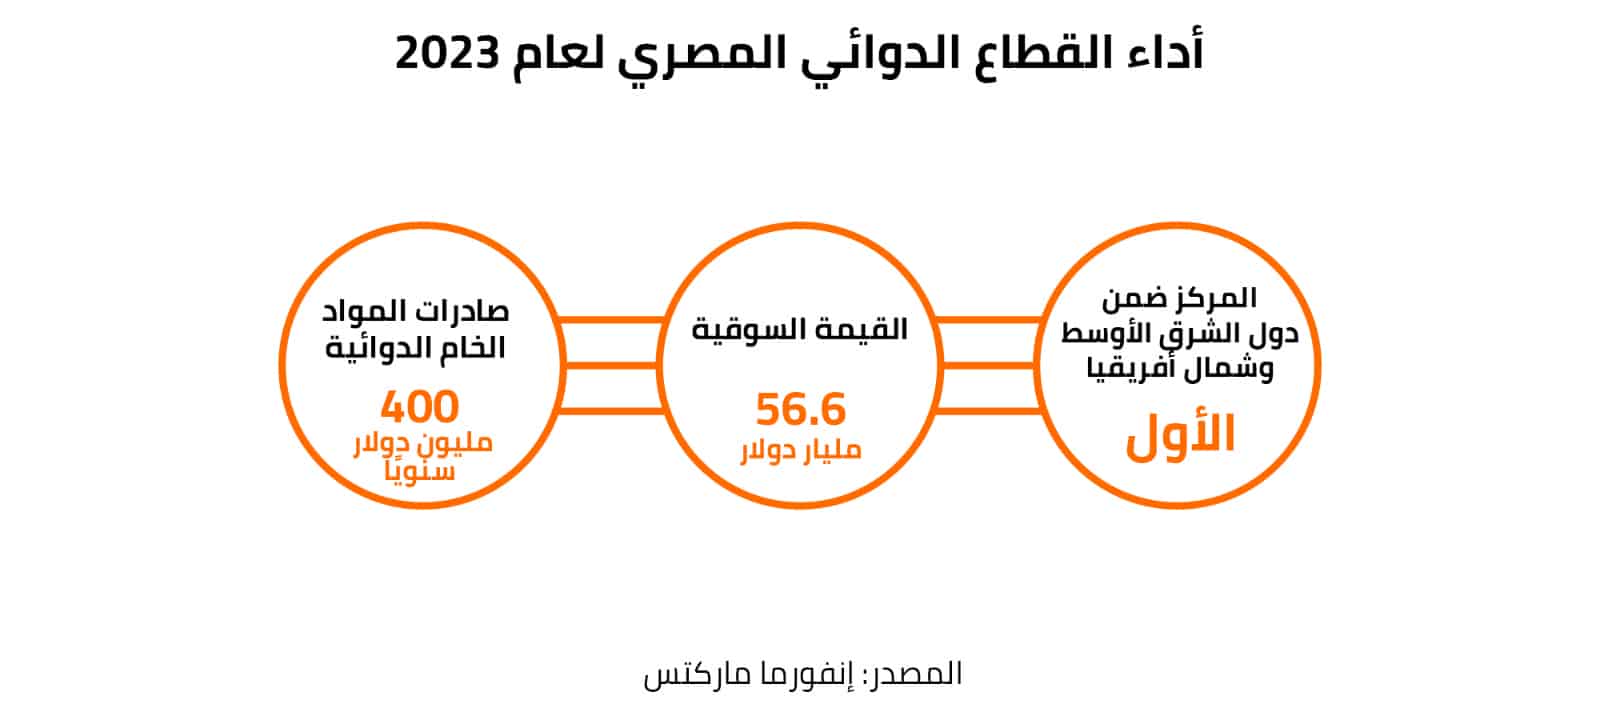 أداء القطاع الدوائي المصري لعام 2023